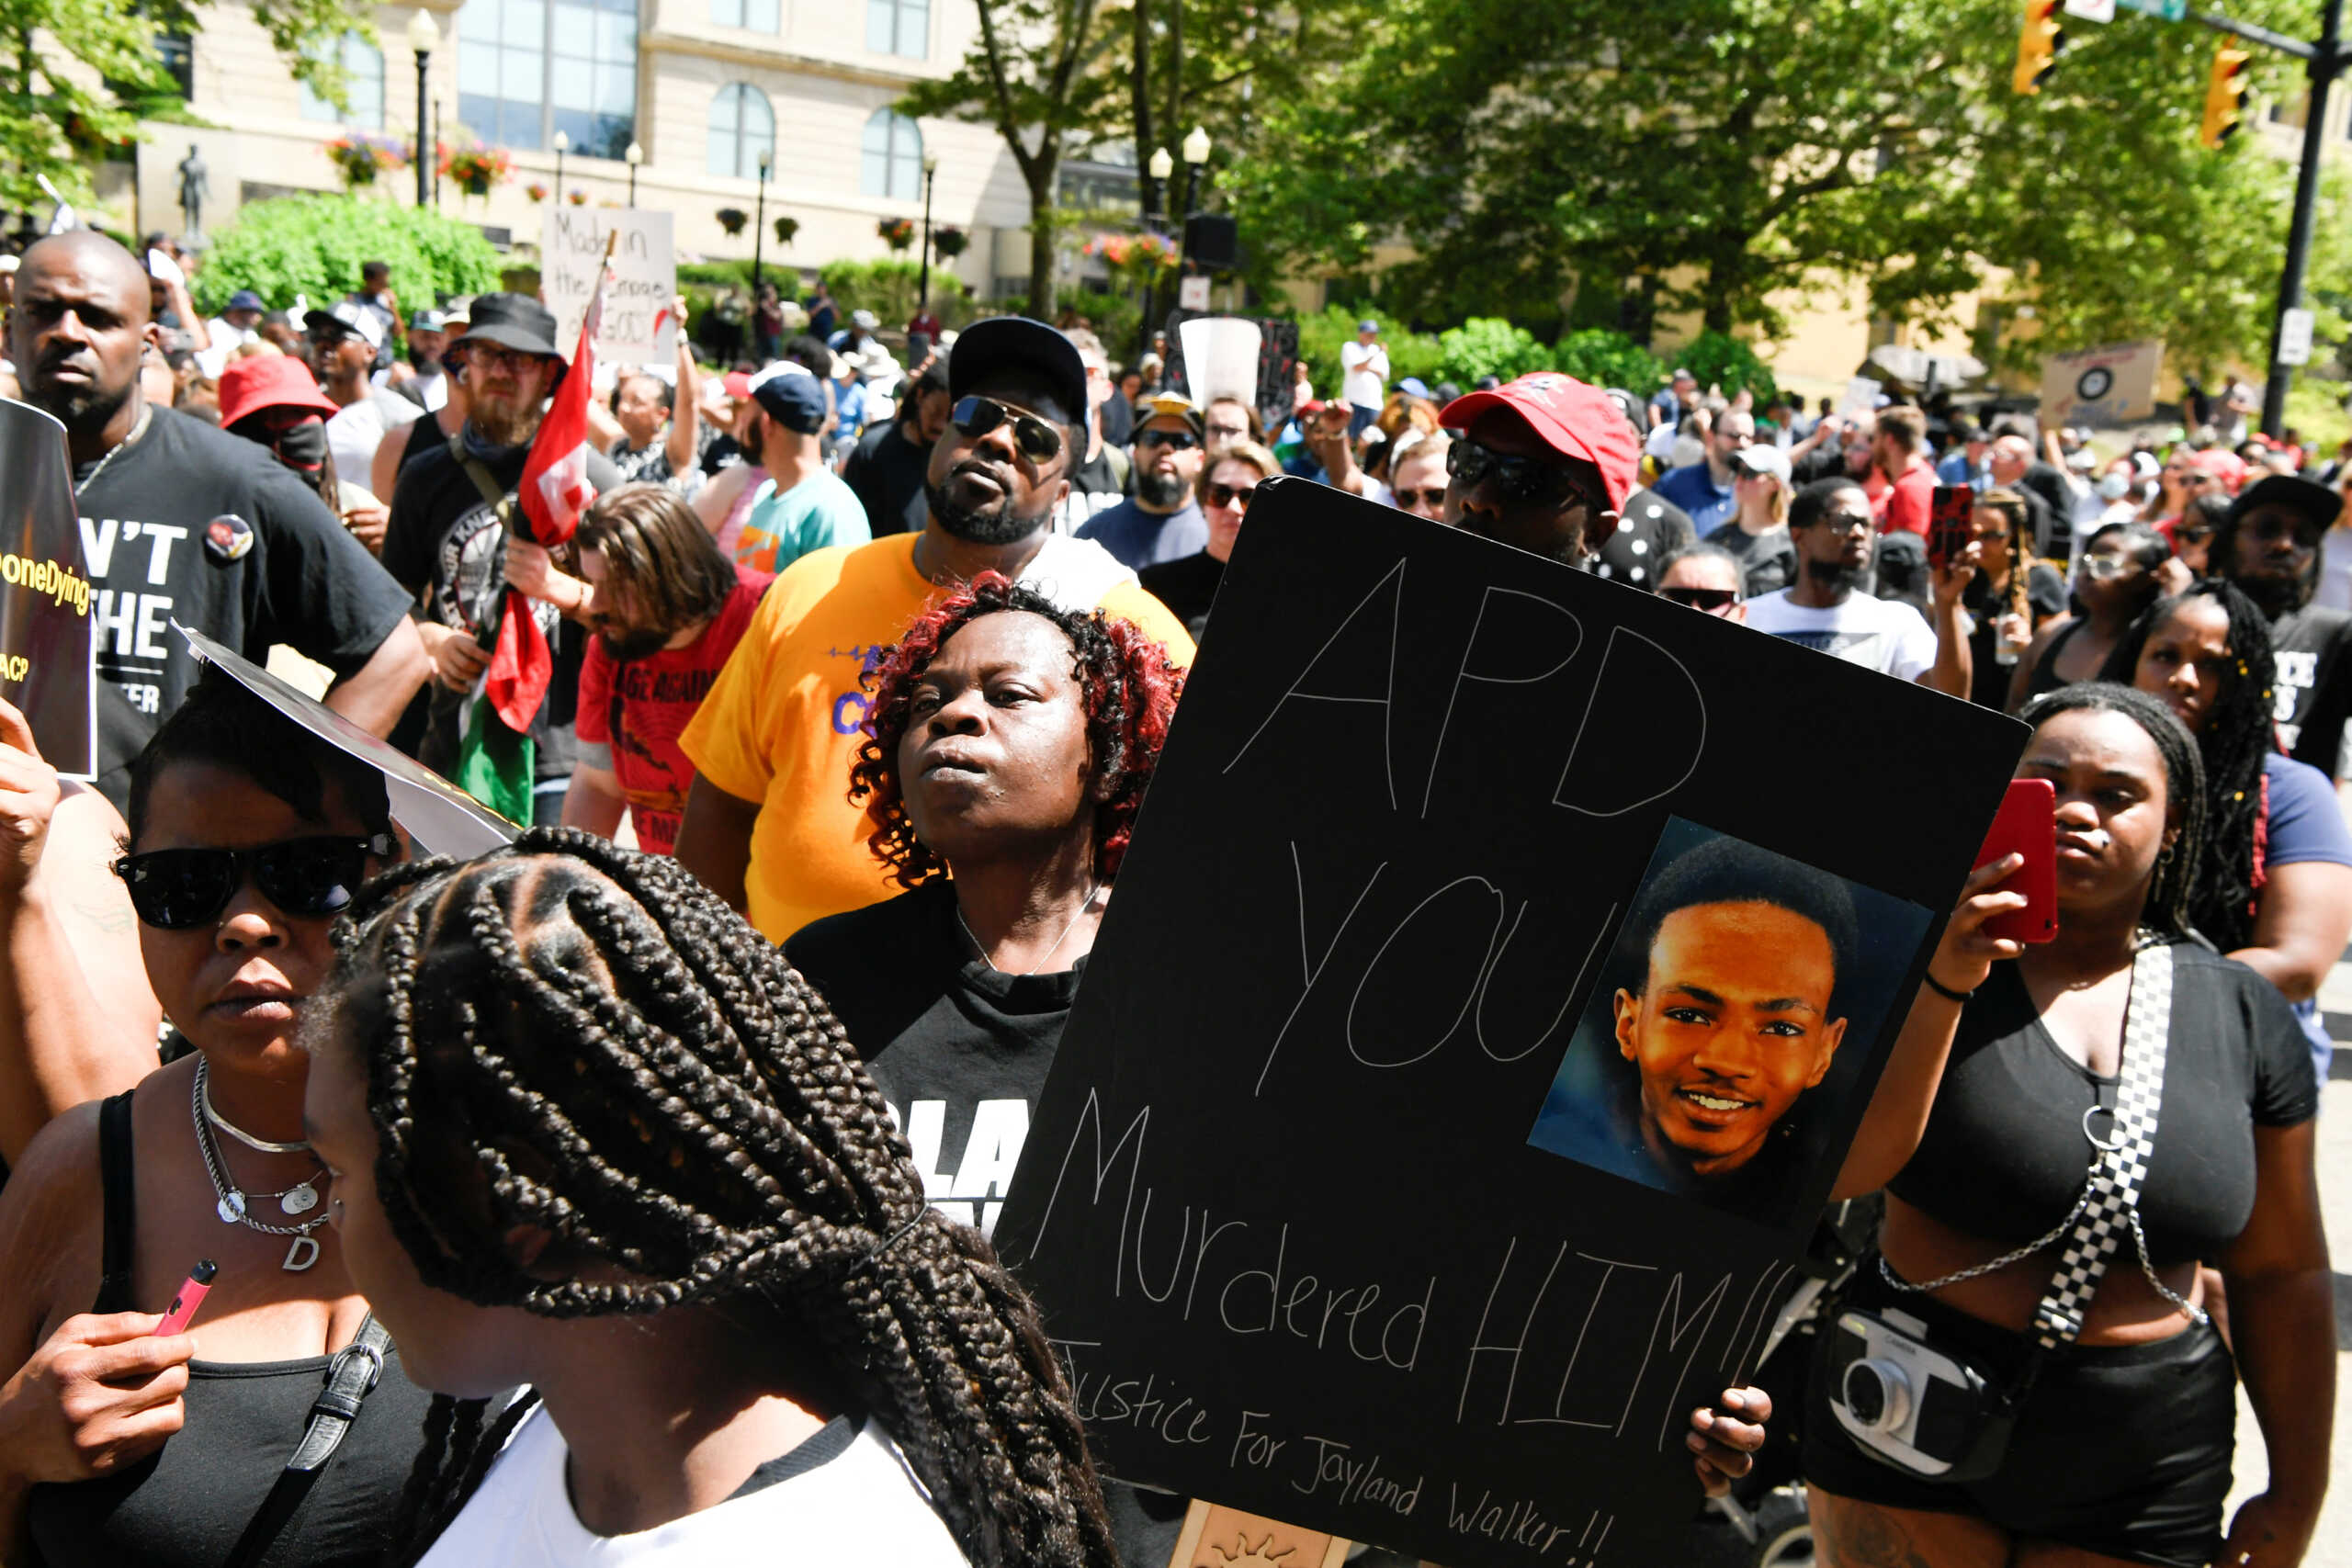 ΗΠΑ: 46 σφαίρες βρέθηκαν στο σώμα του Αφροαμερικανού που σκοτώθηκε στο Οχάιο από αστυνομικούς